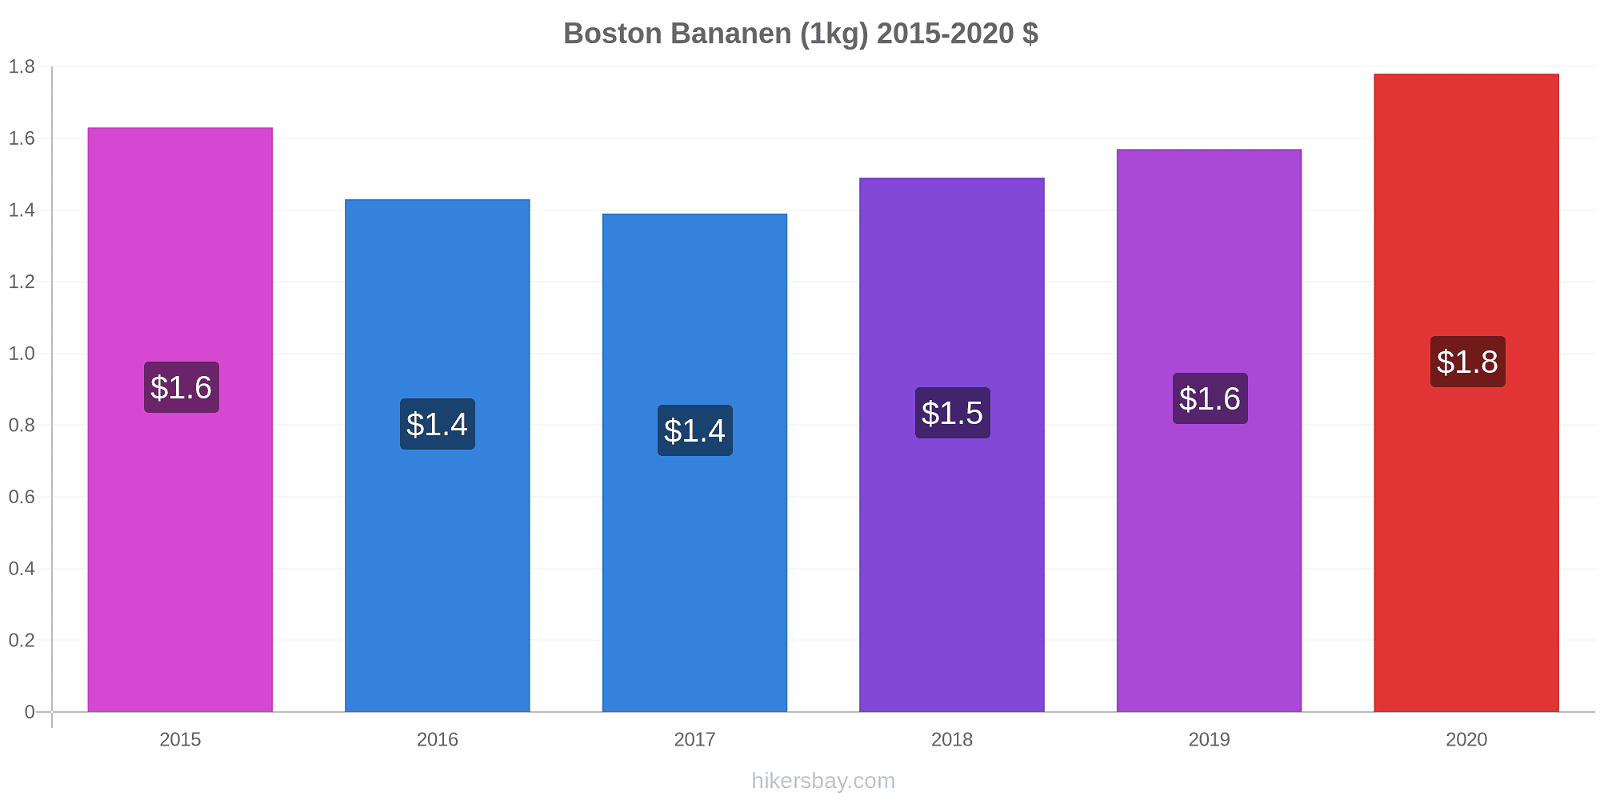 Boston Preisänderungen Banane (1kg) hikersbay.com